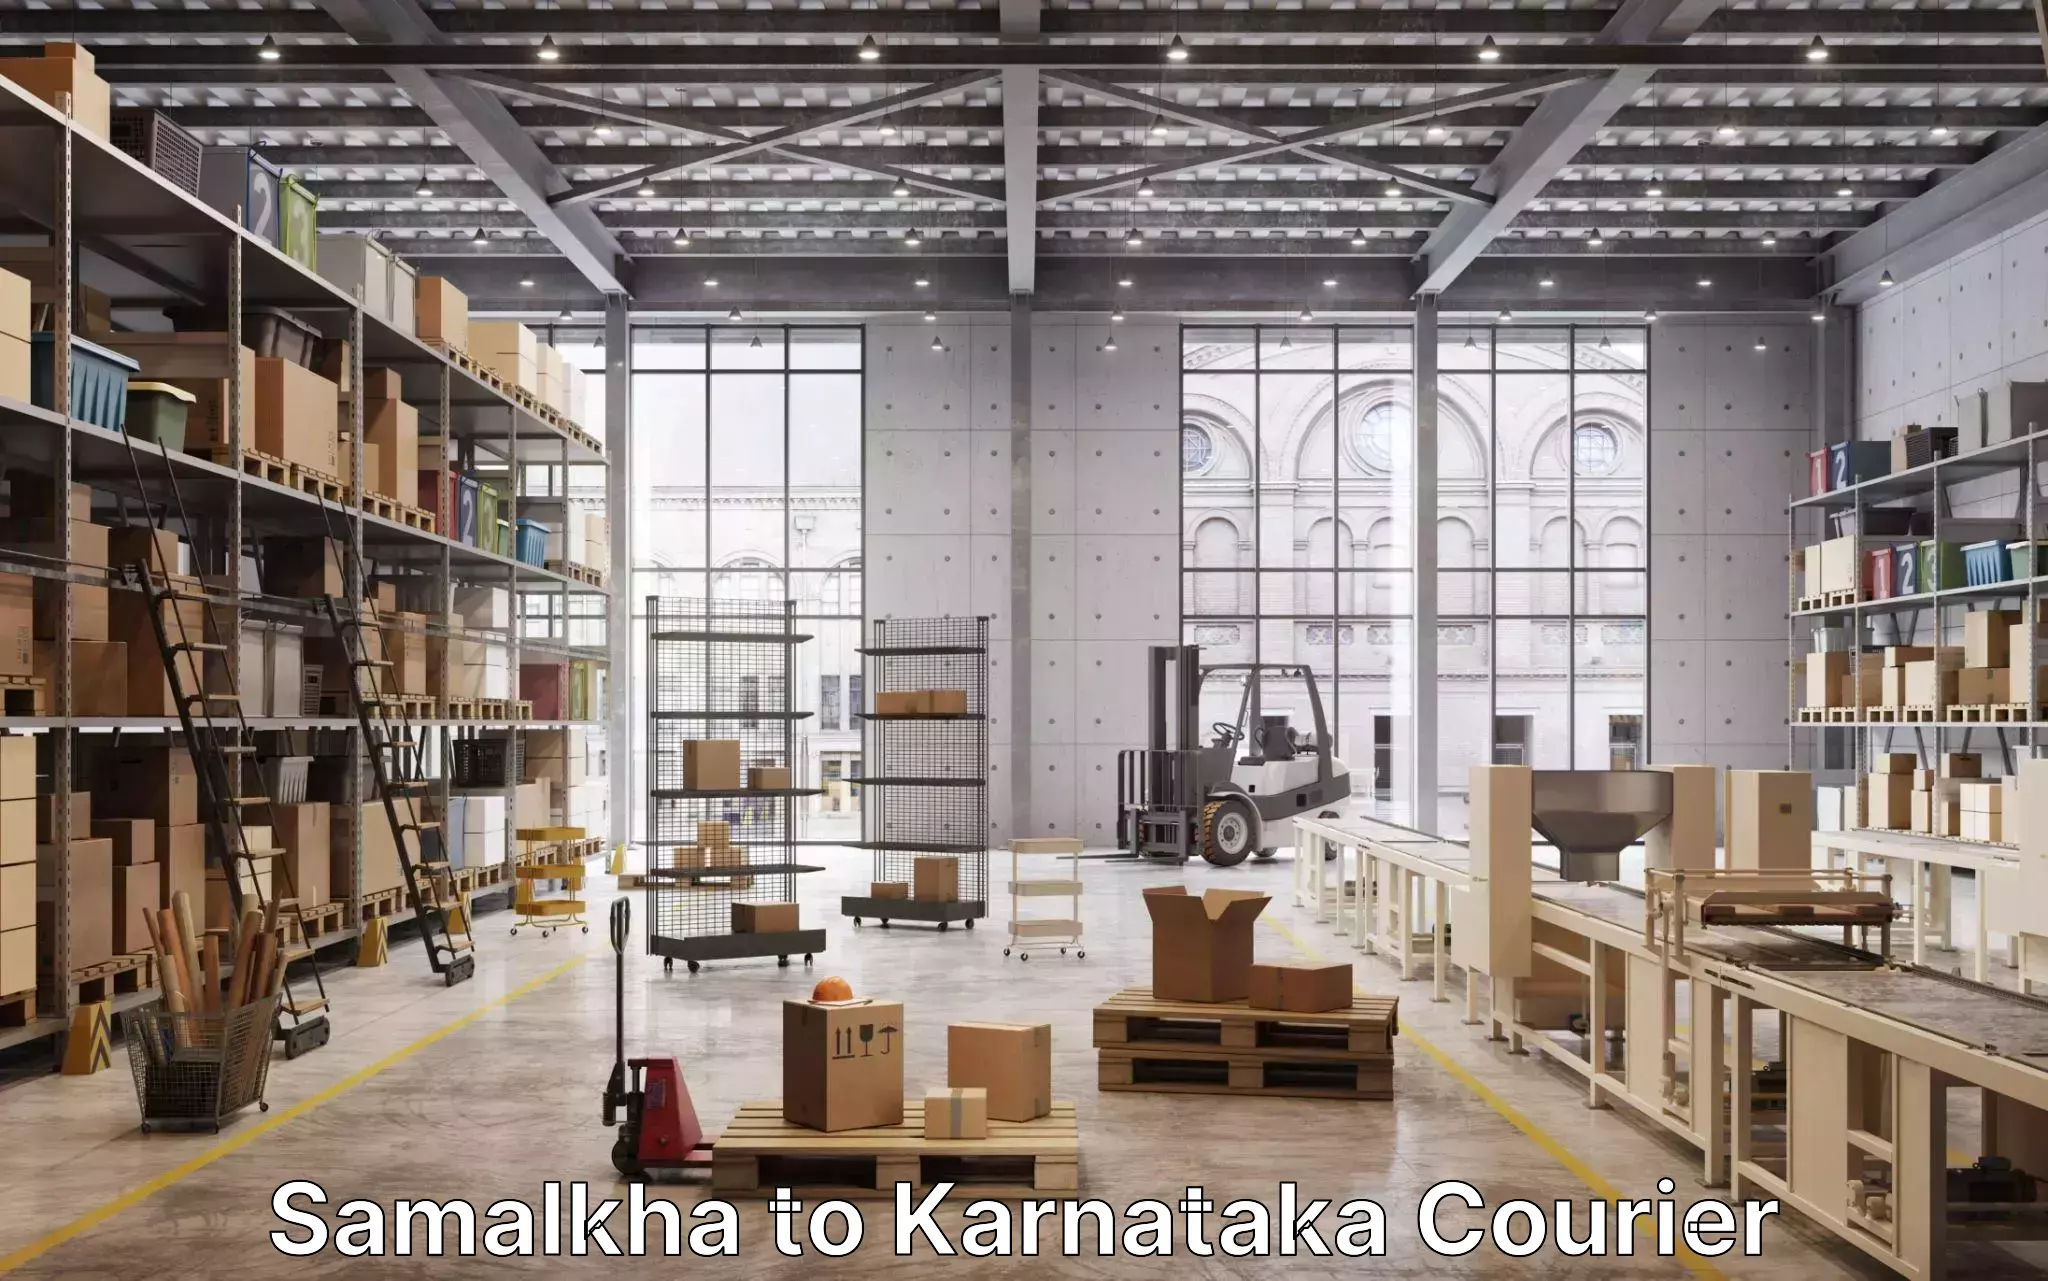 Furniture moving experts Samalkha to Chikkaballapur